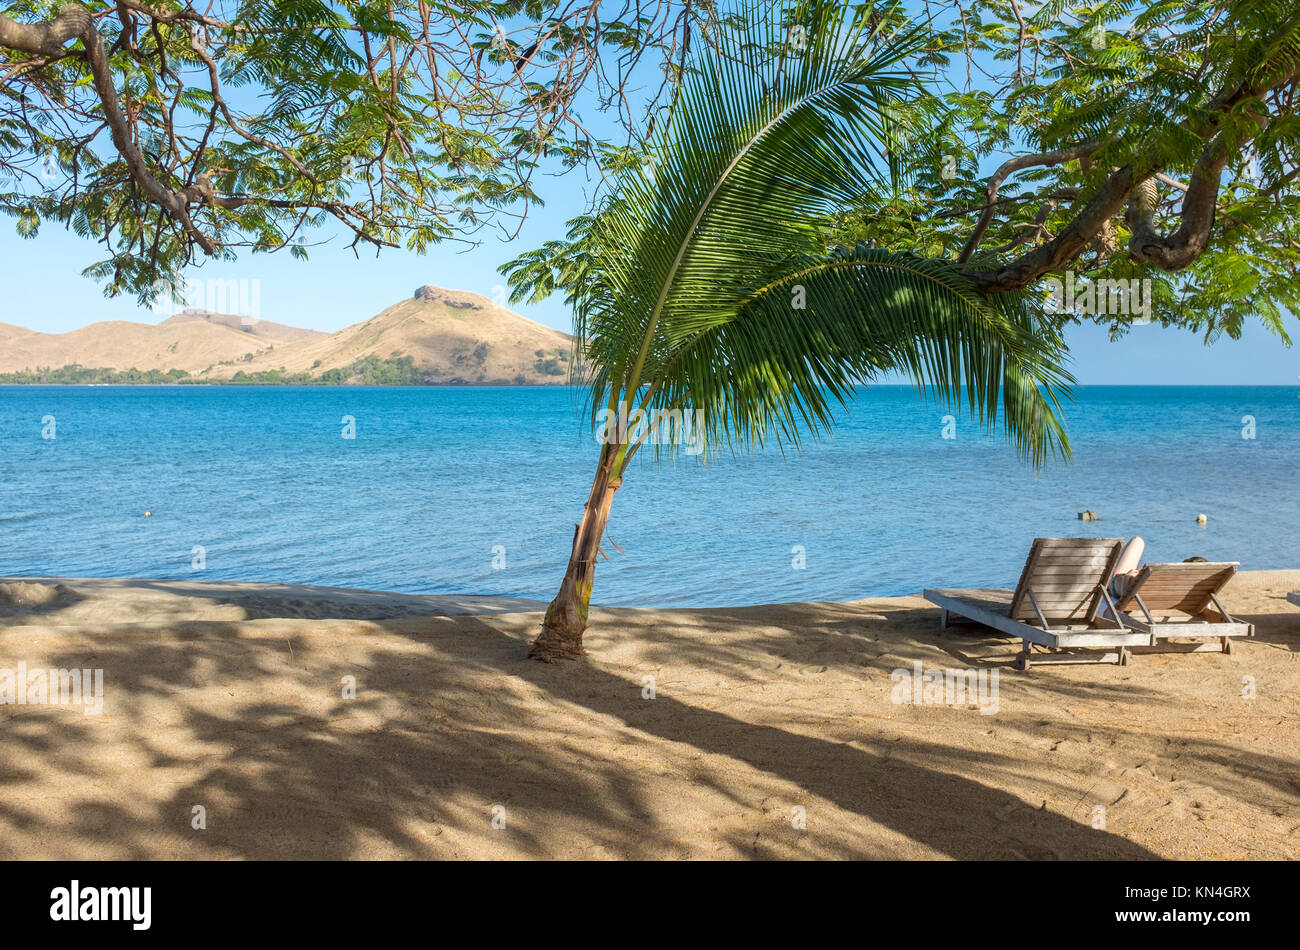 Palmen, Voli Voli, Fidschi Inseln, West Pazifik, Südsee Stockfoto